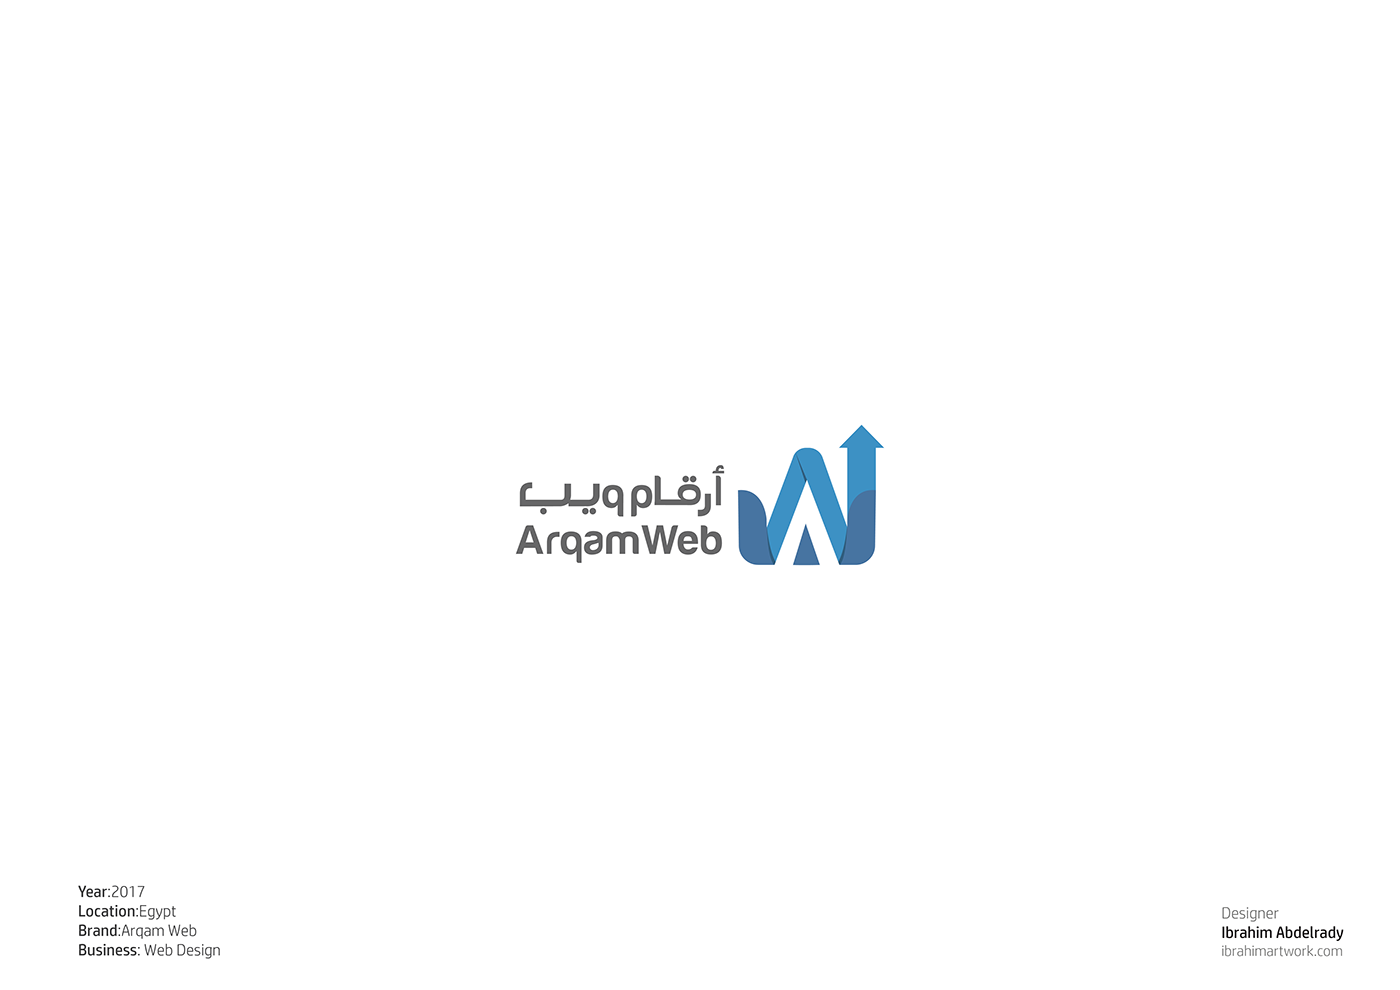 design ibrahimartwork identity logo logodesign logofolio Pranding